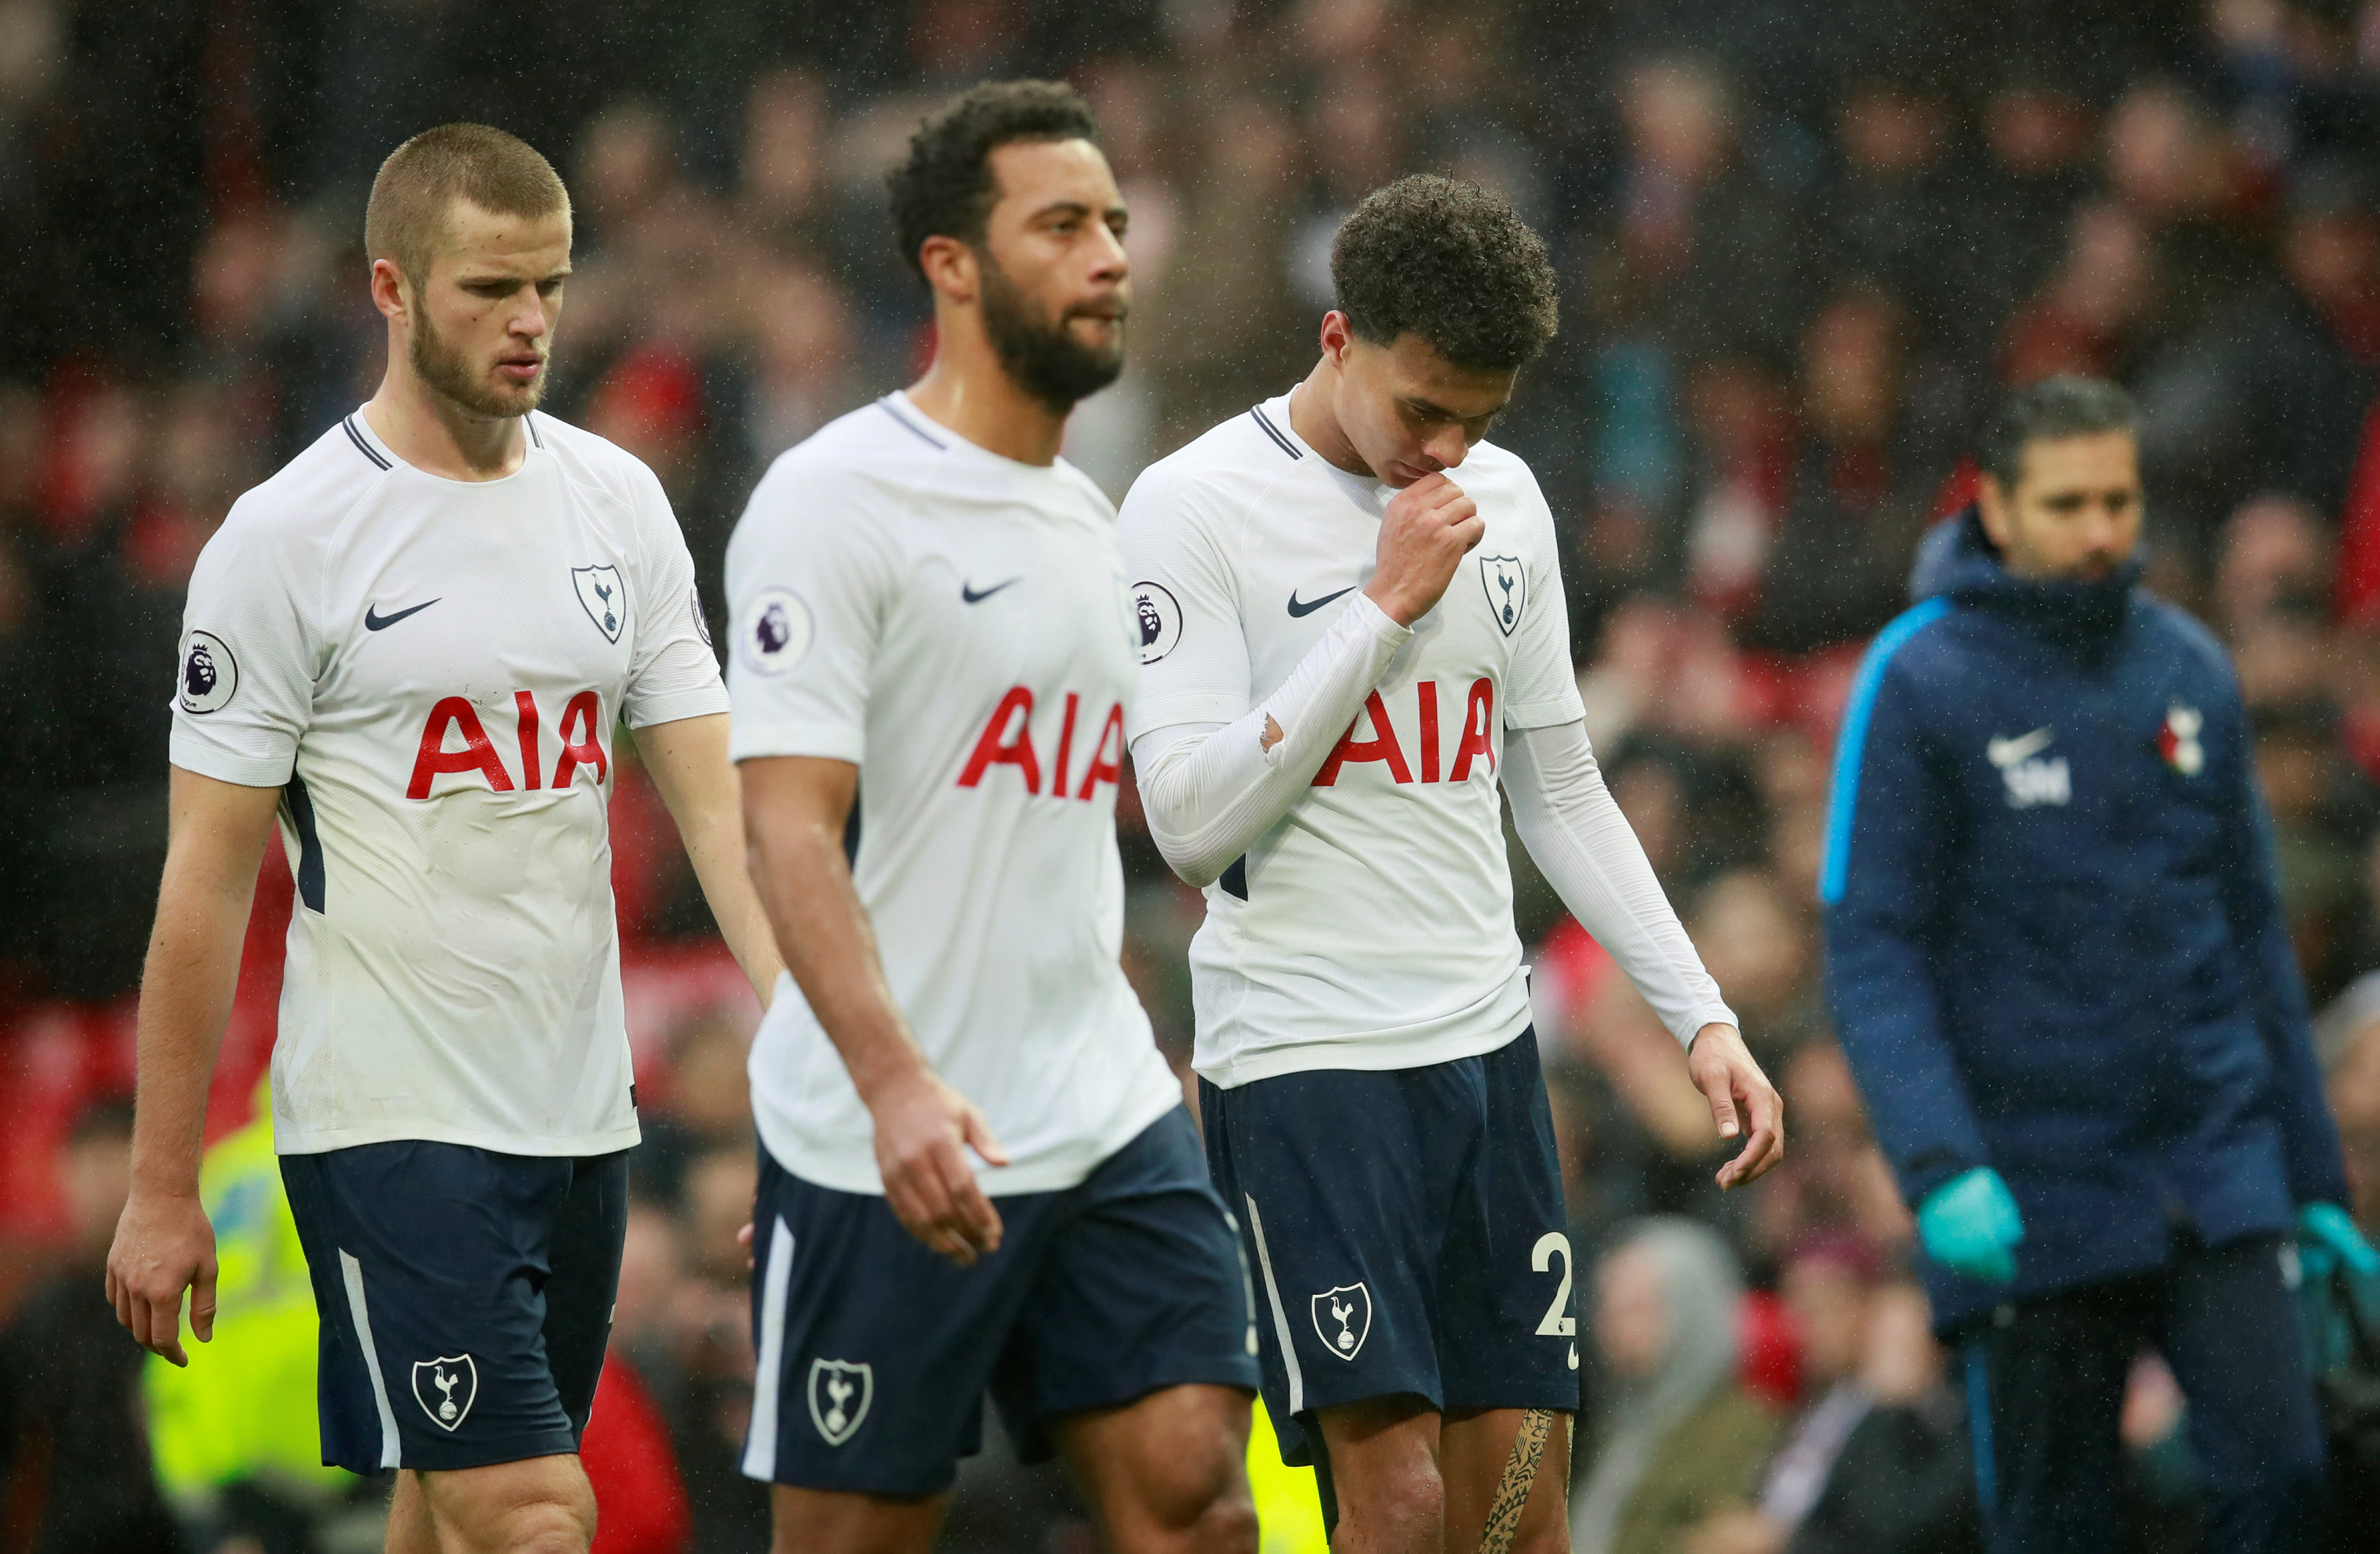 Sự thất vọng của các cầu thủ Tottenham sau trận thua. Ảnh: REUTERS